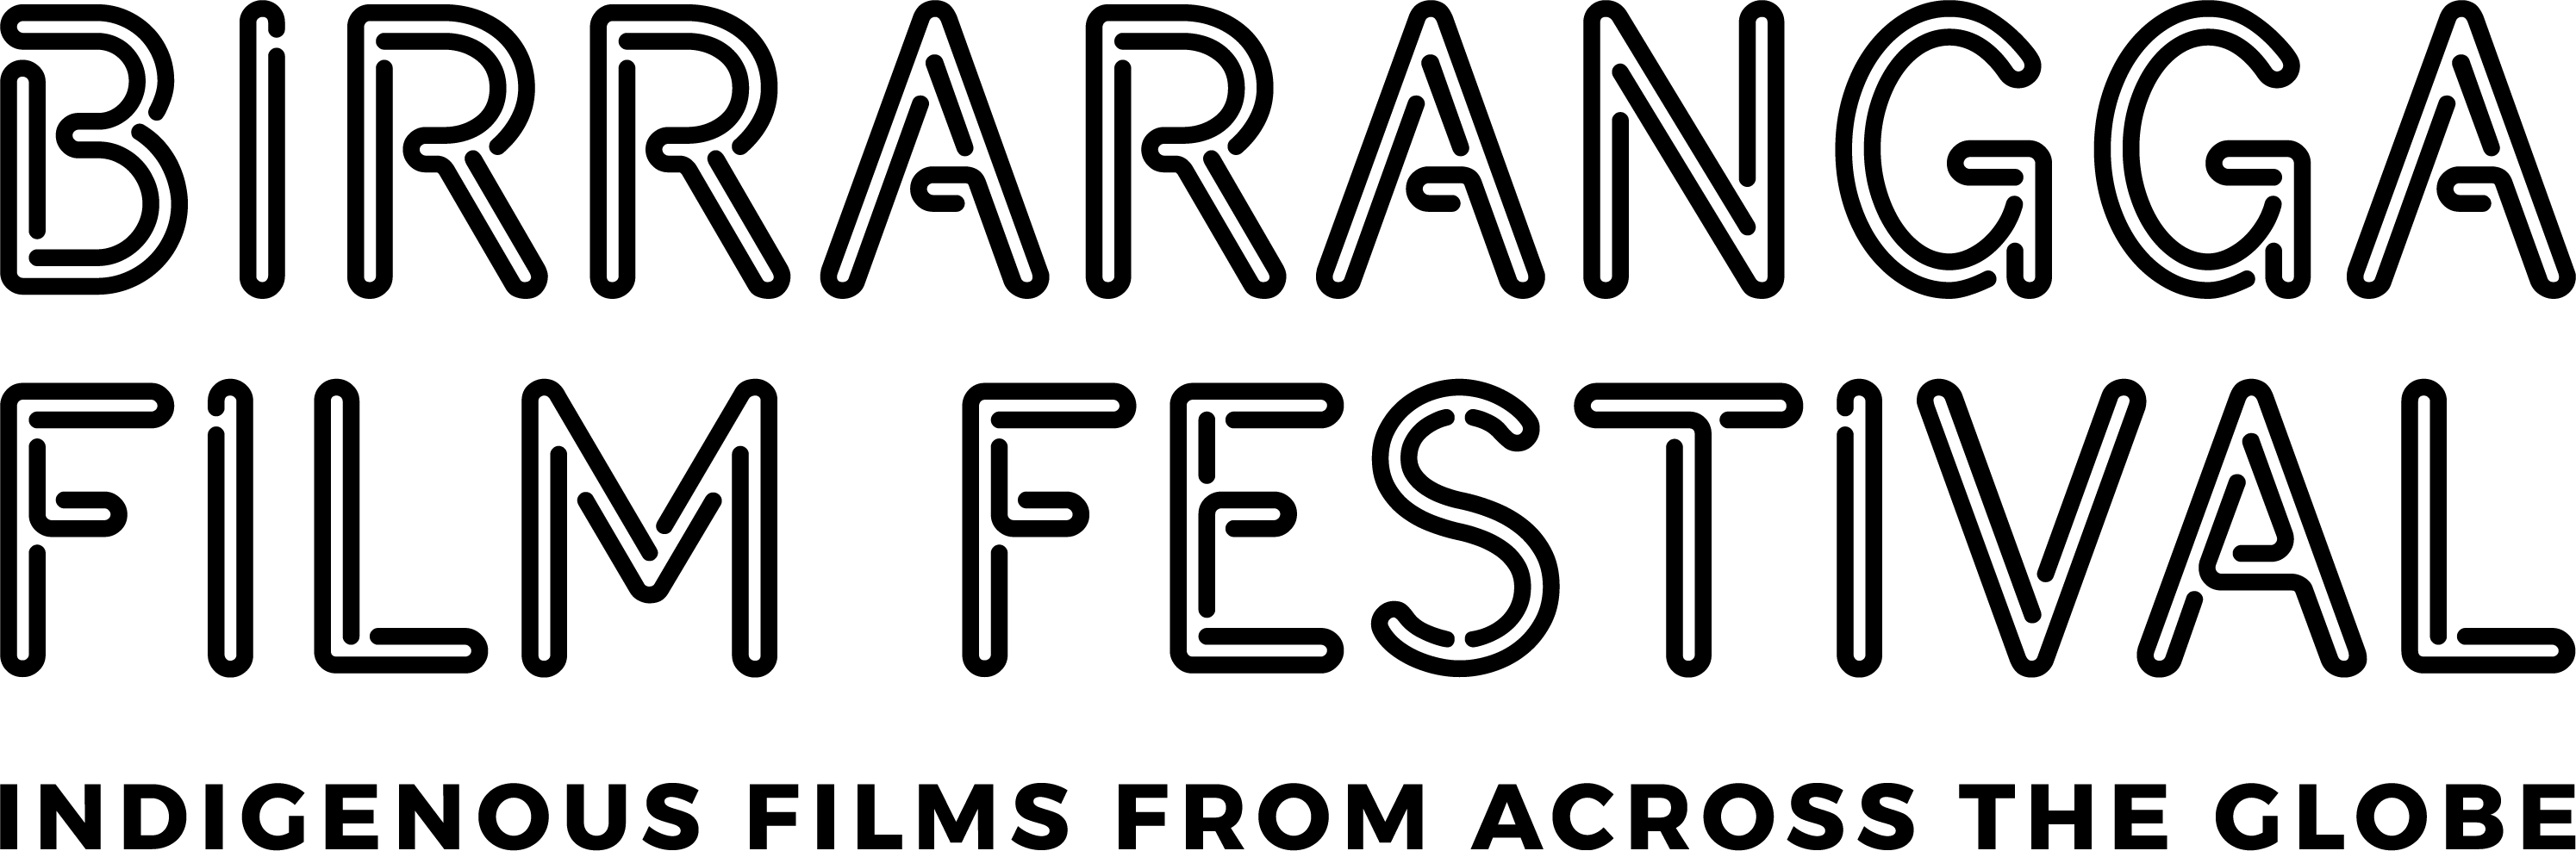 Birrarangga logo